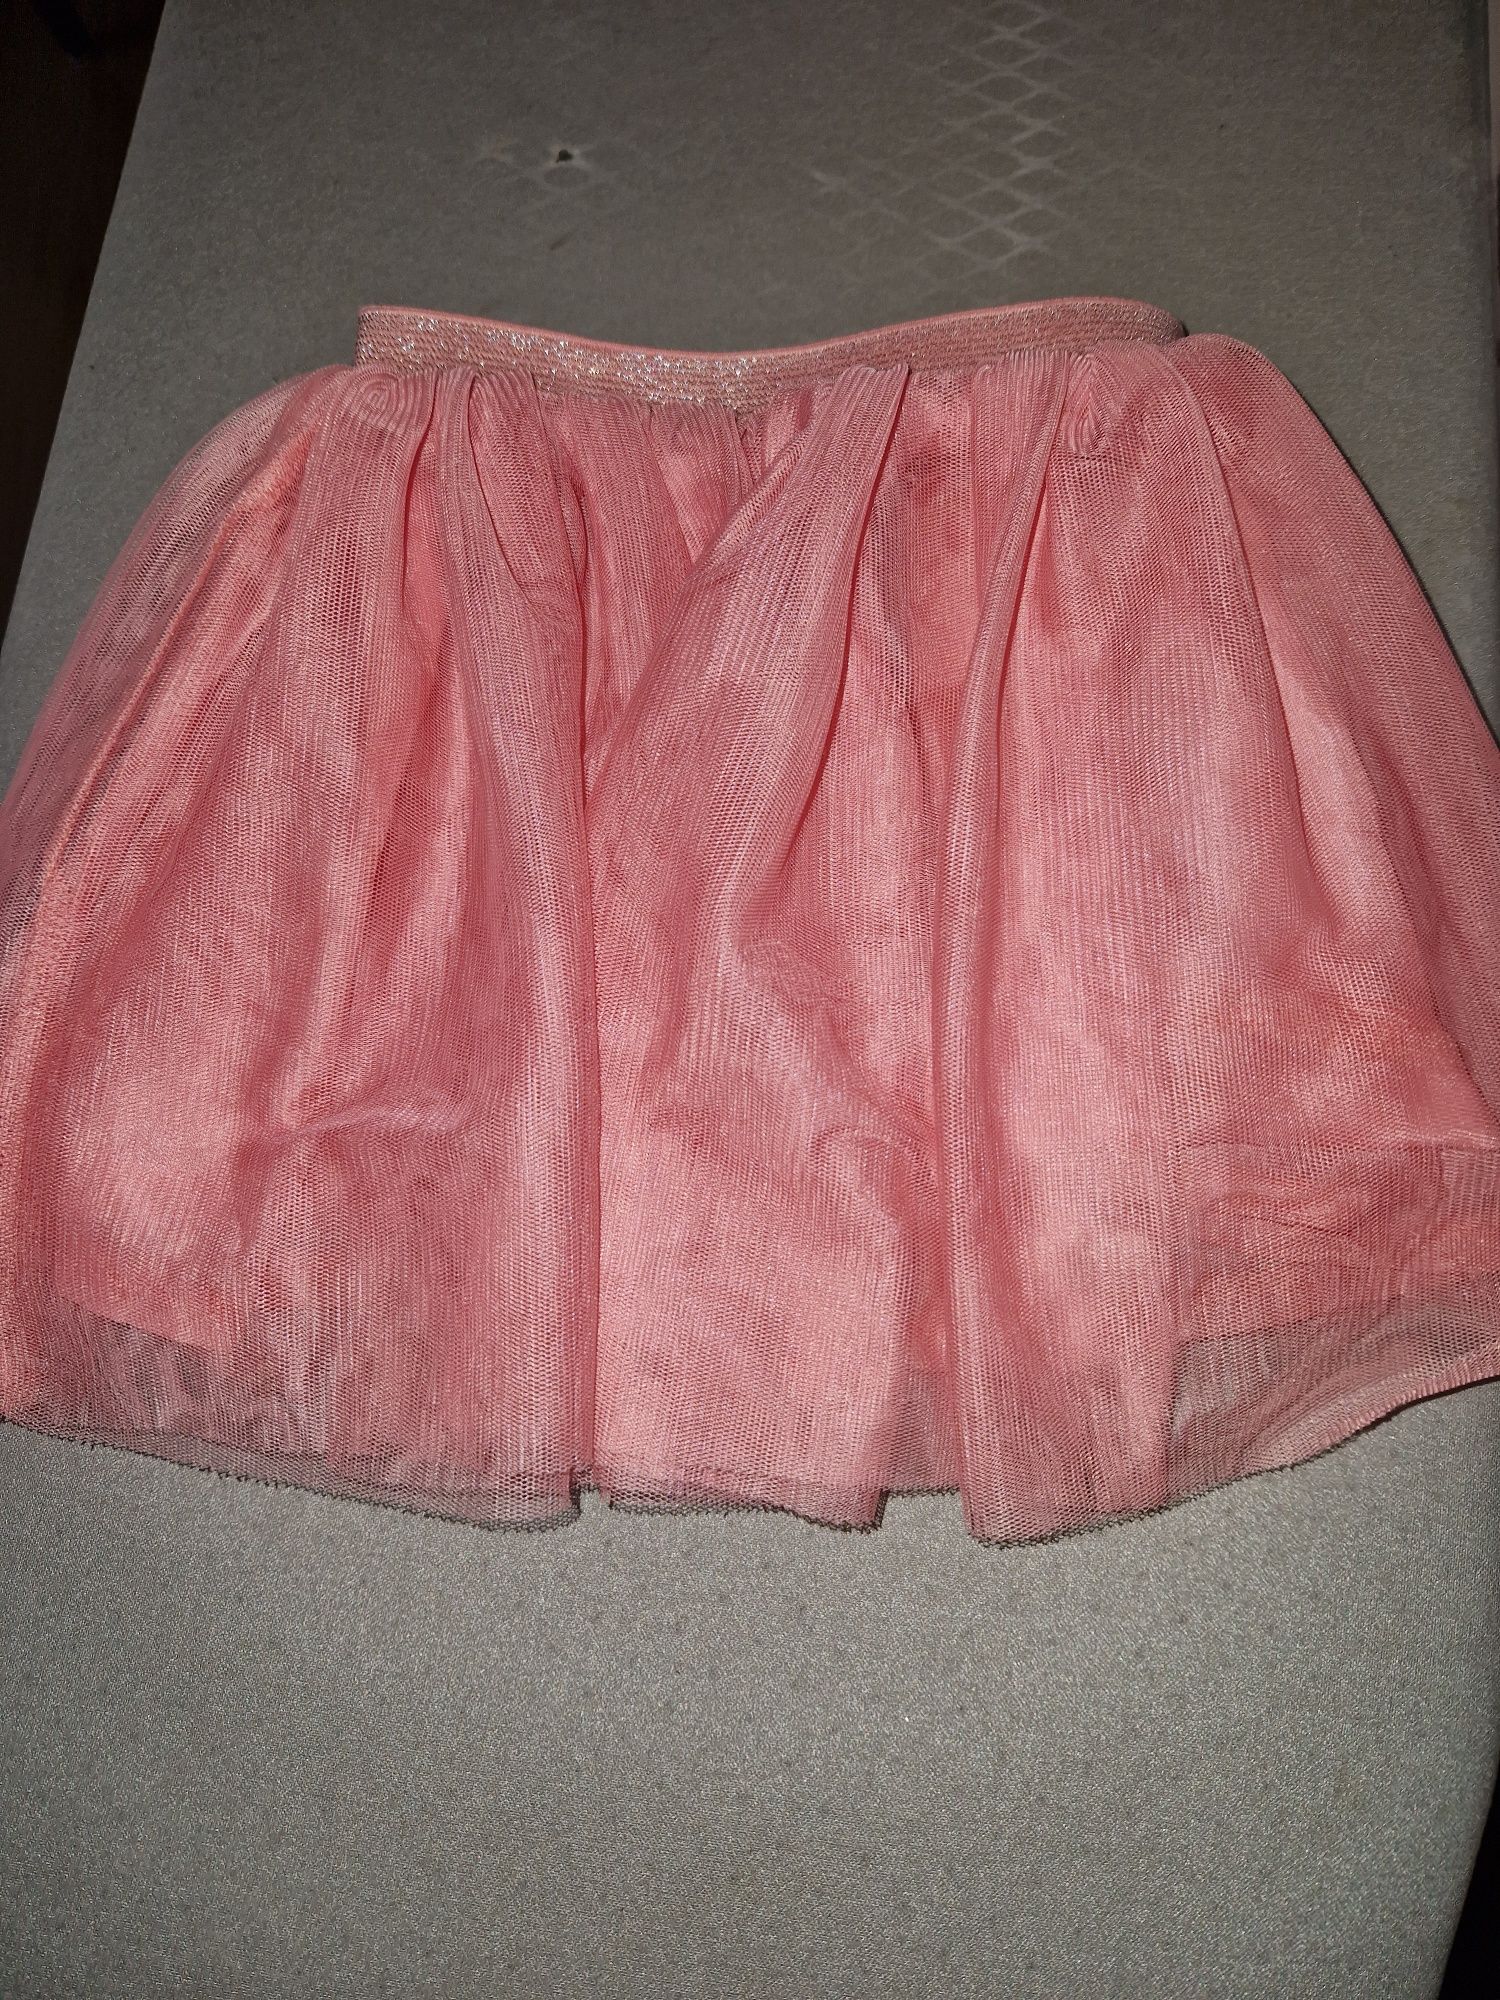 Spódnica tiulowa r. 80 - 92 różowa